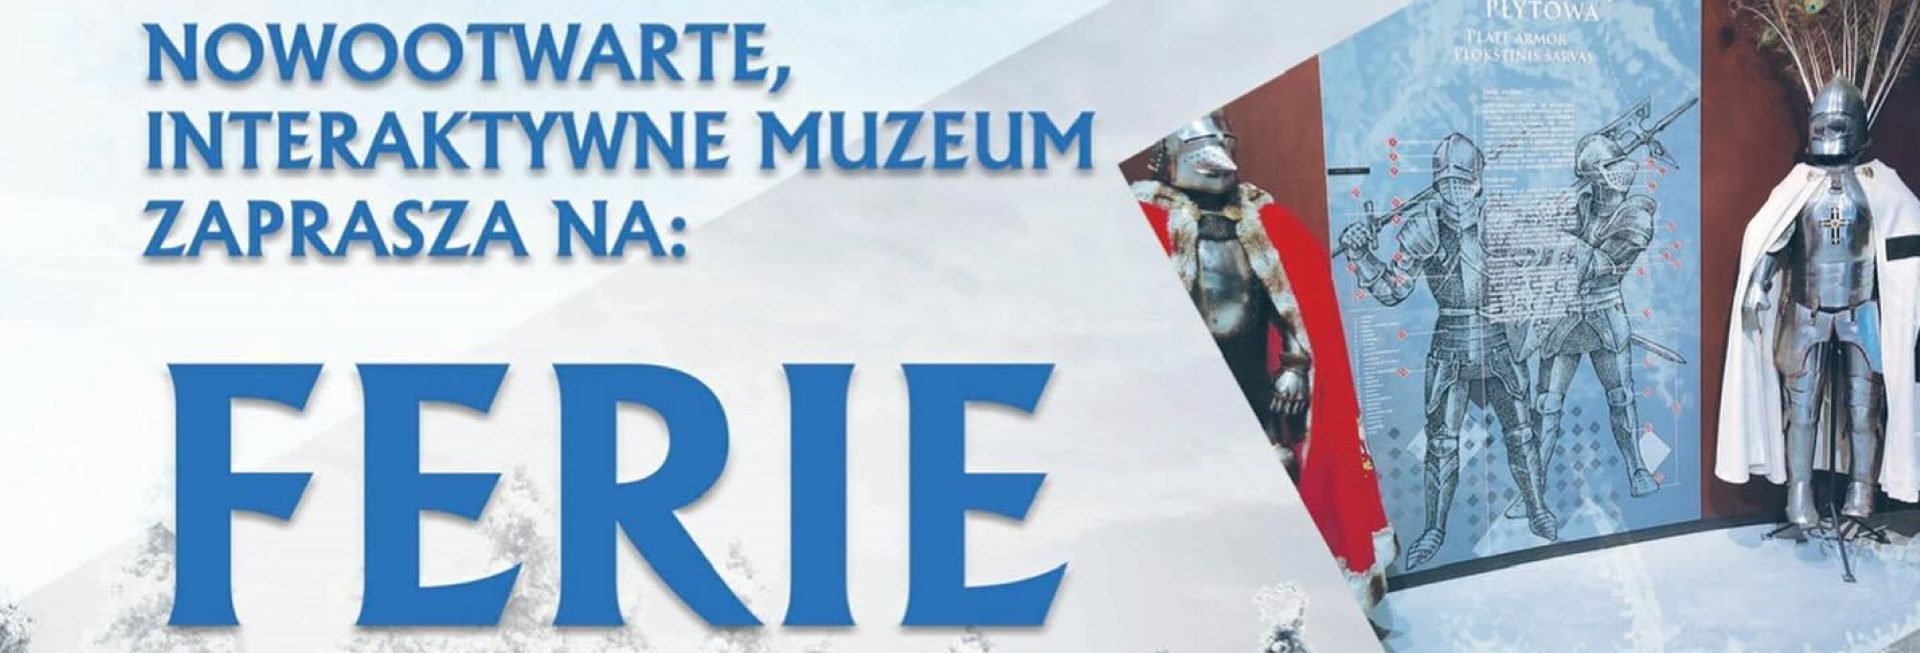 Plakat zapraszający w dniach od 15 stycznia do 25 lutego 2024 r. do Muzeum Bitwy Pod Grunwaldem na Ferie z Historią Grunwald 2024.